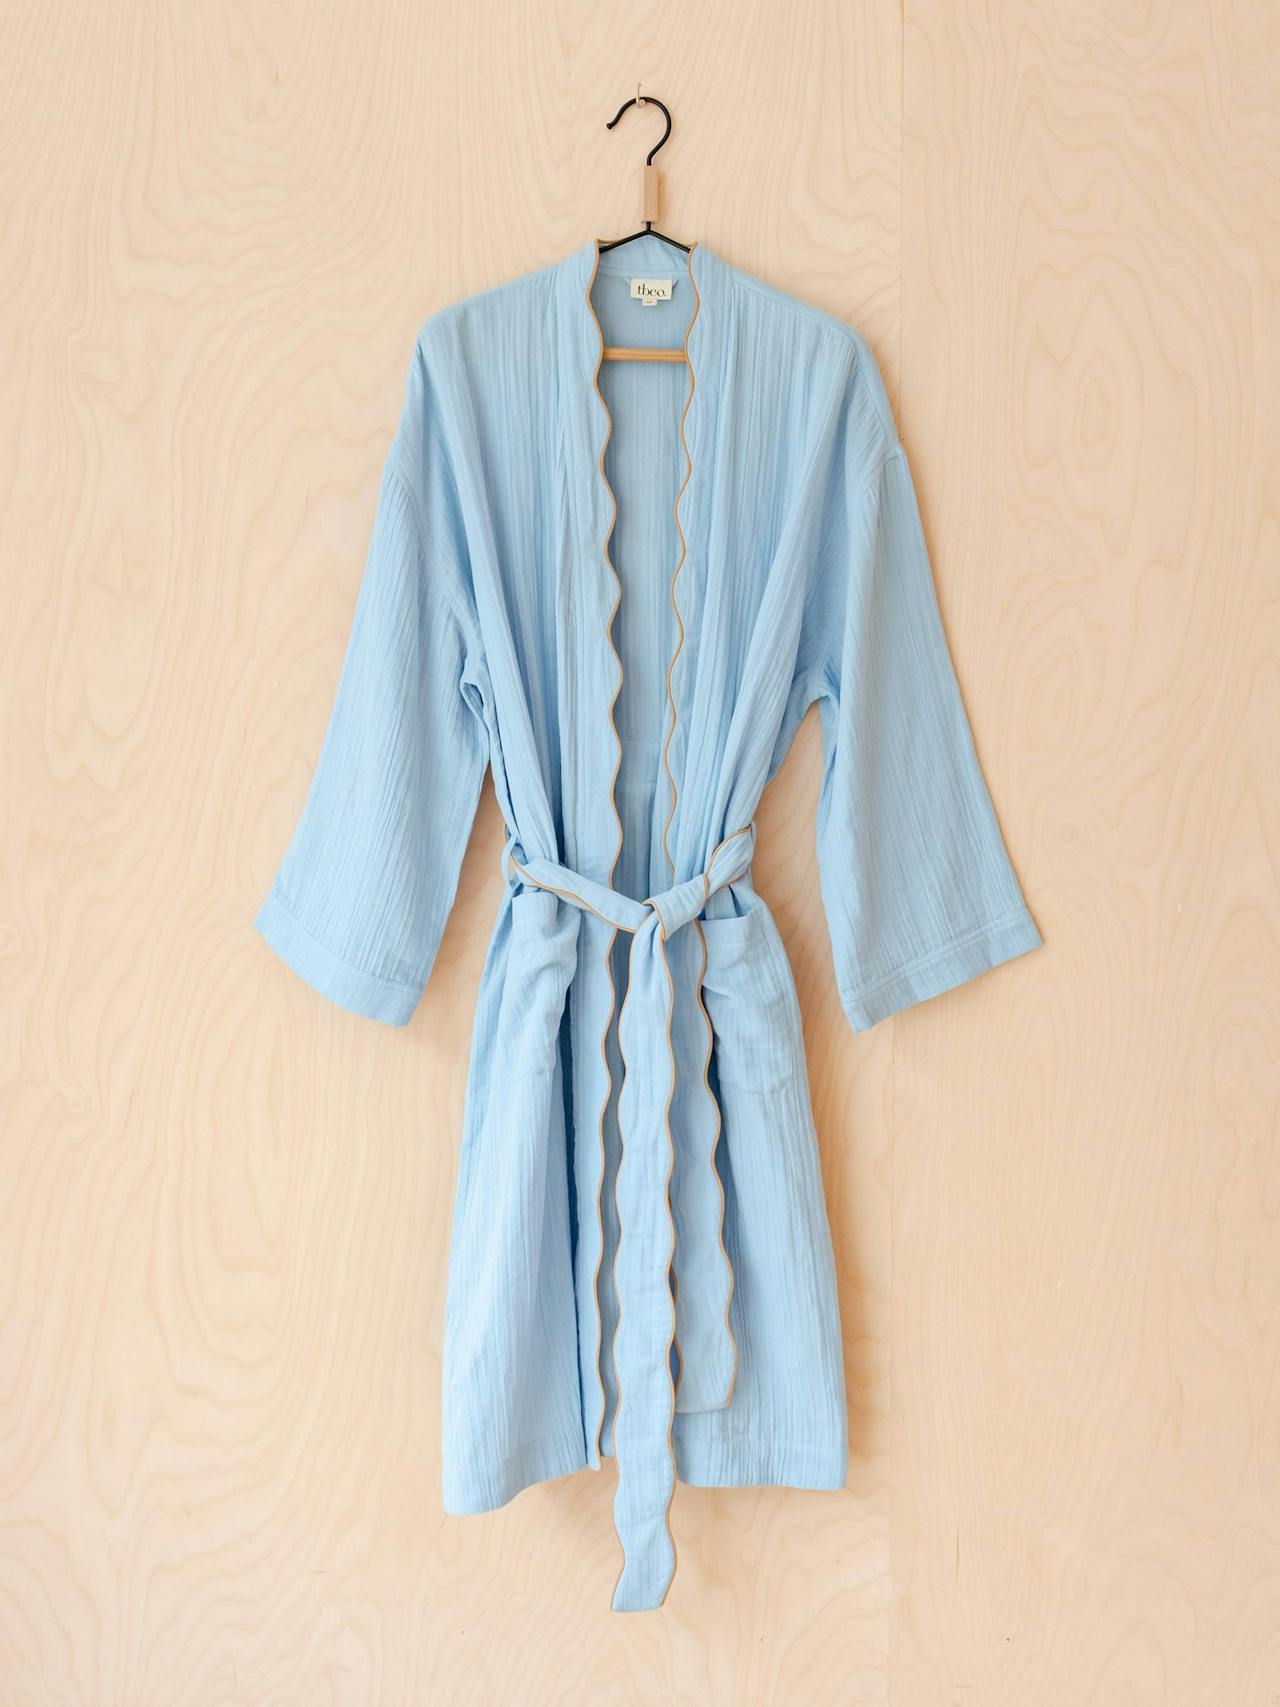 Cotton robe in blue scallop